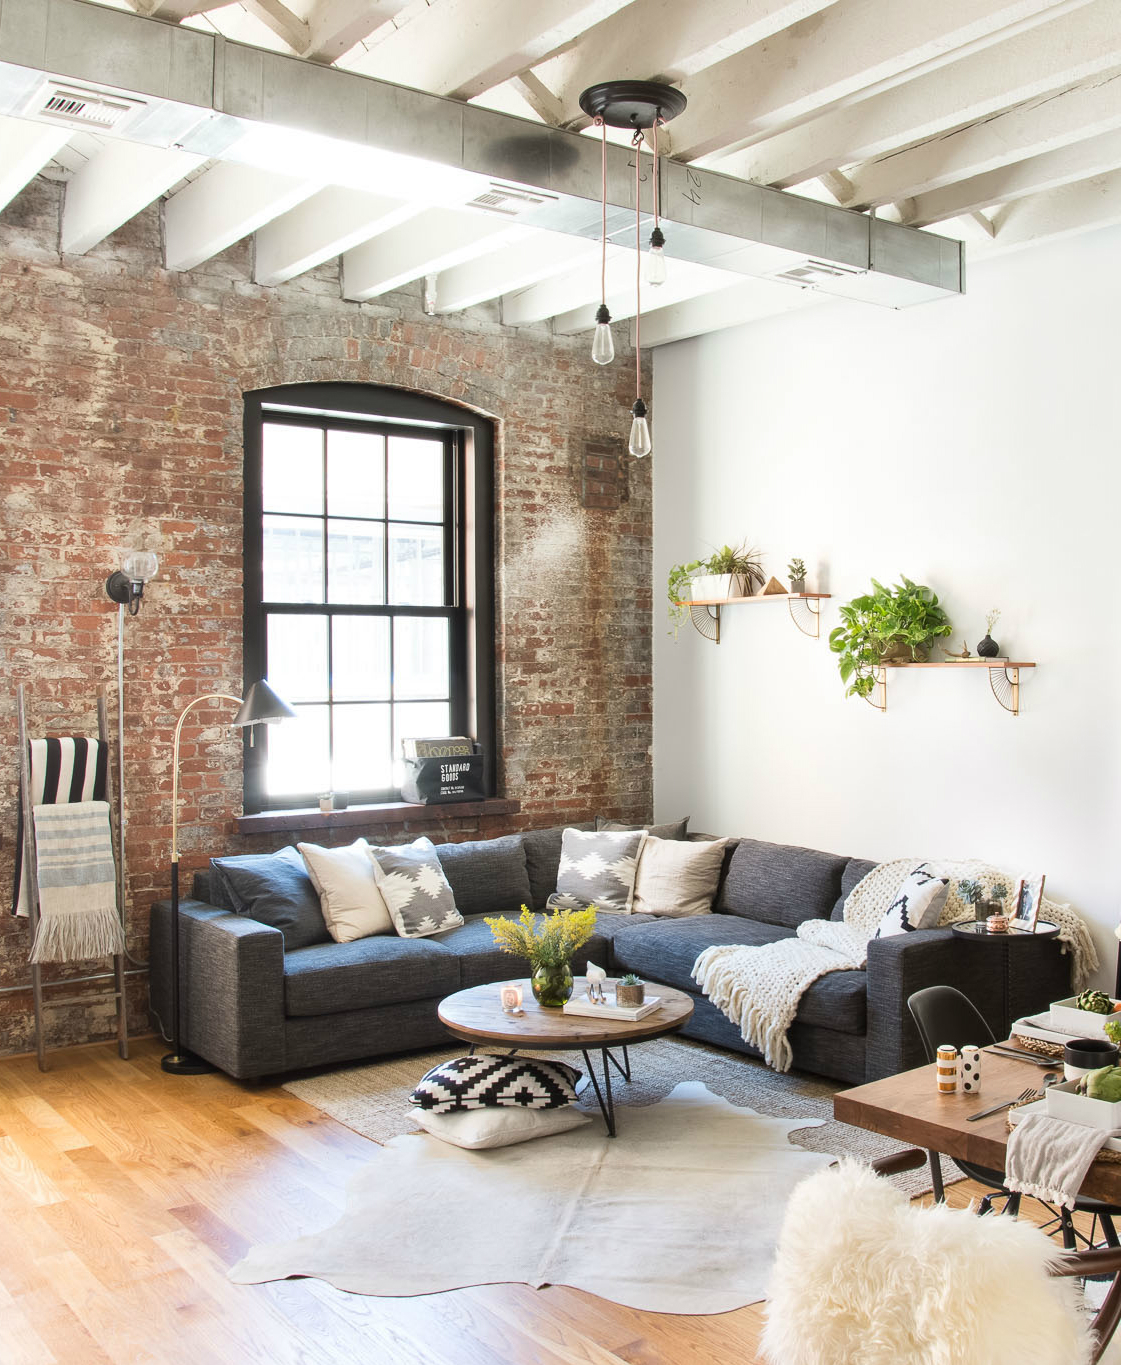 25 Decorating Ideas For A Cozy Home Decor